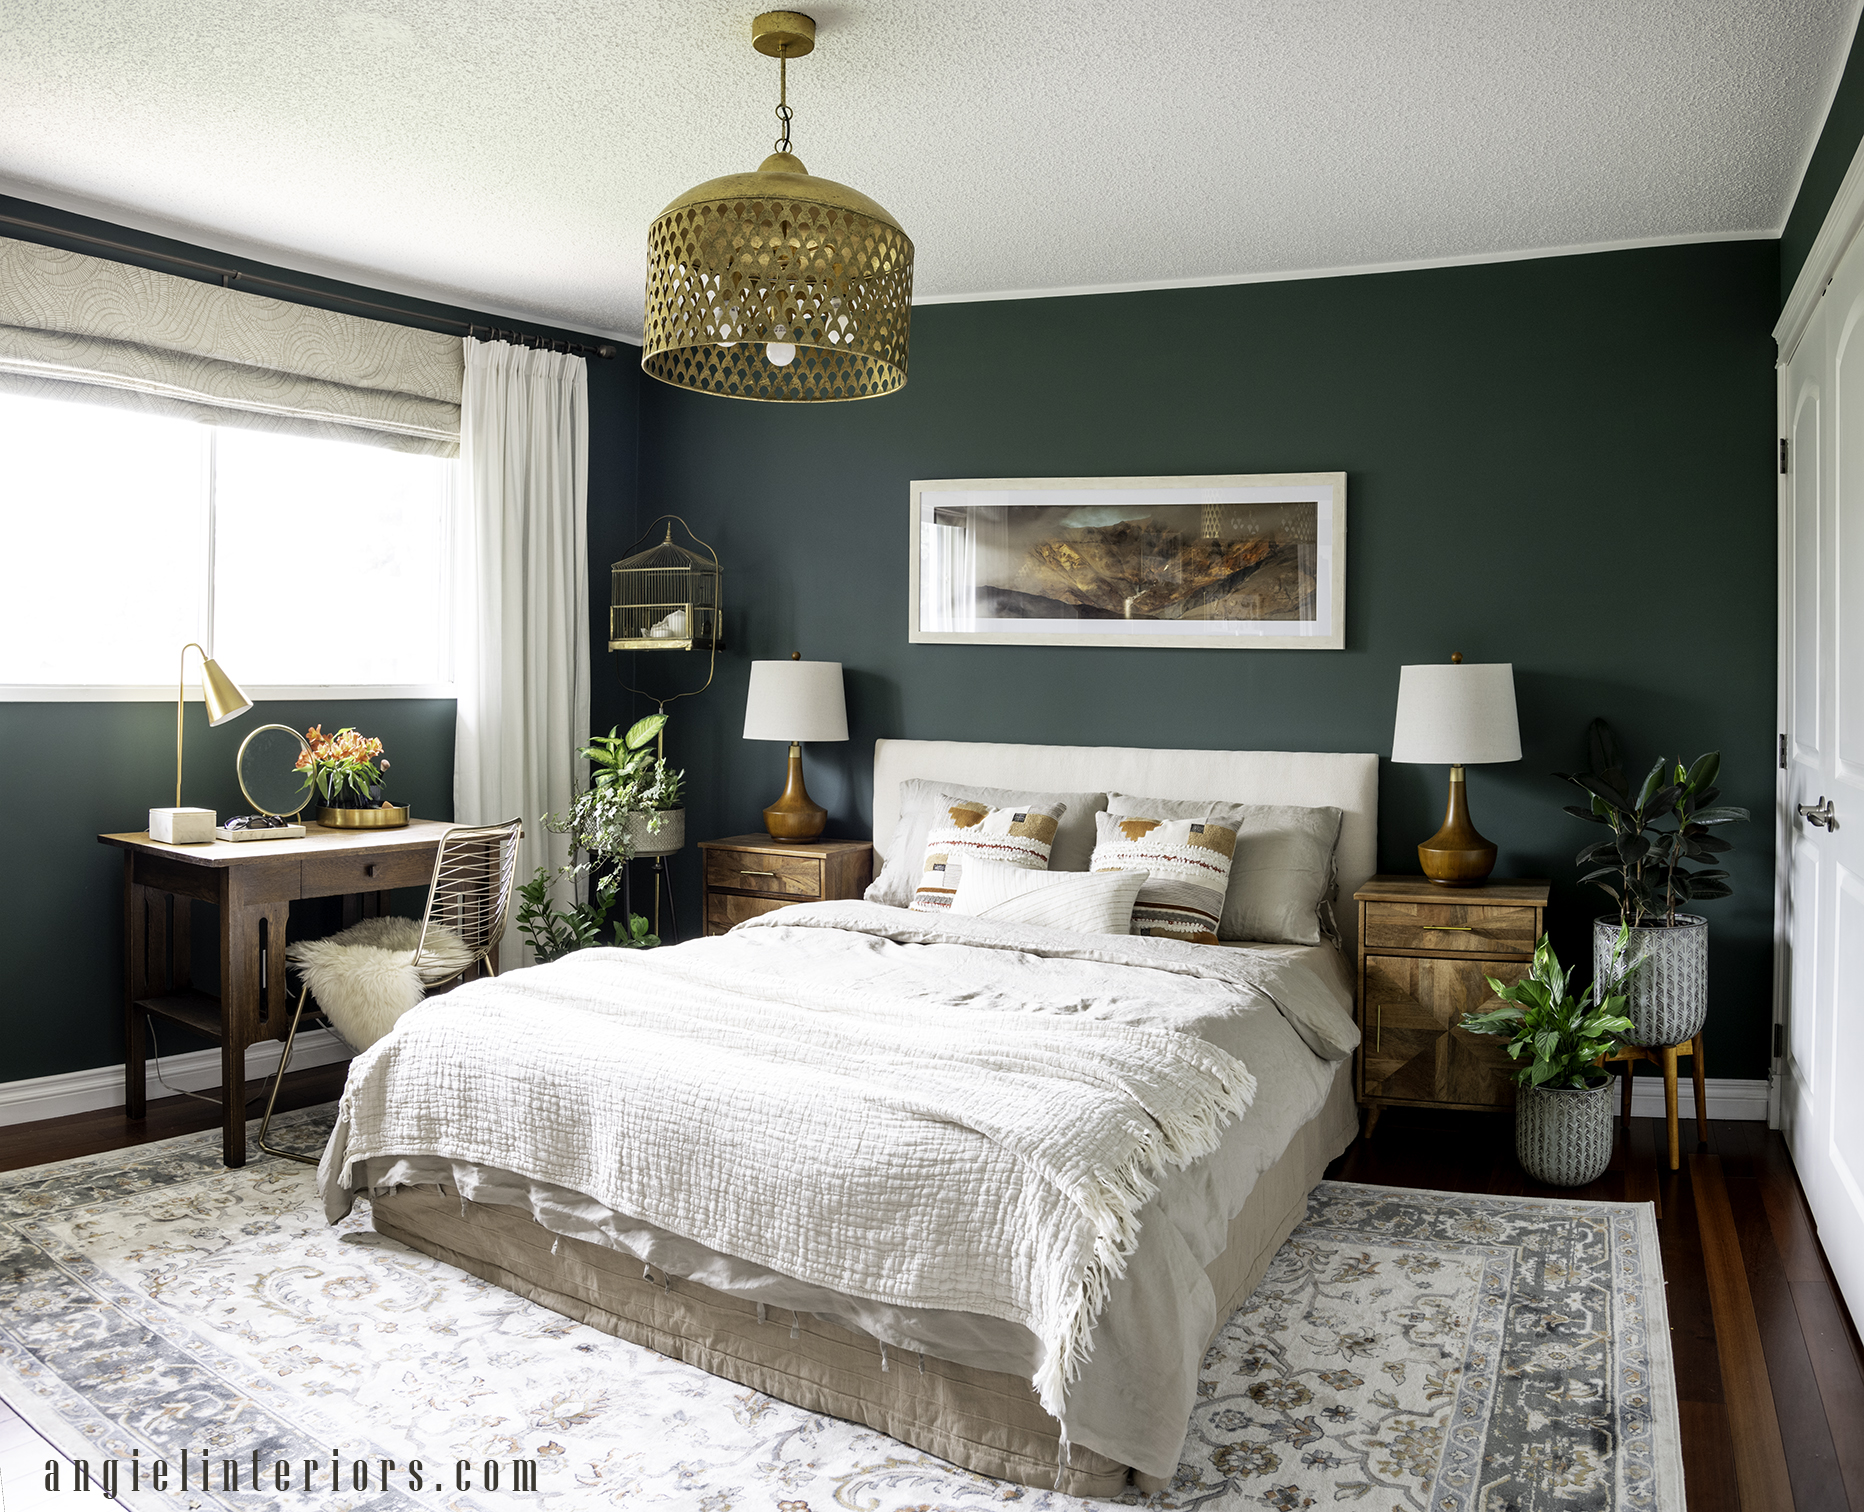 Dark Green Bedroom Ideas